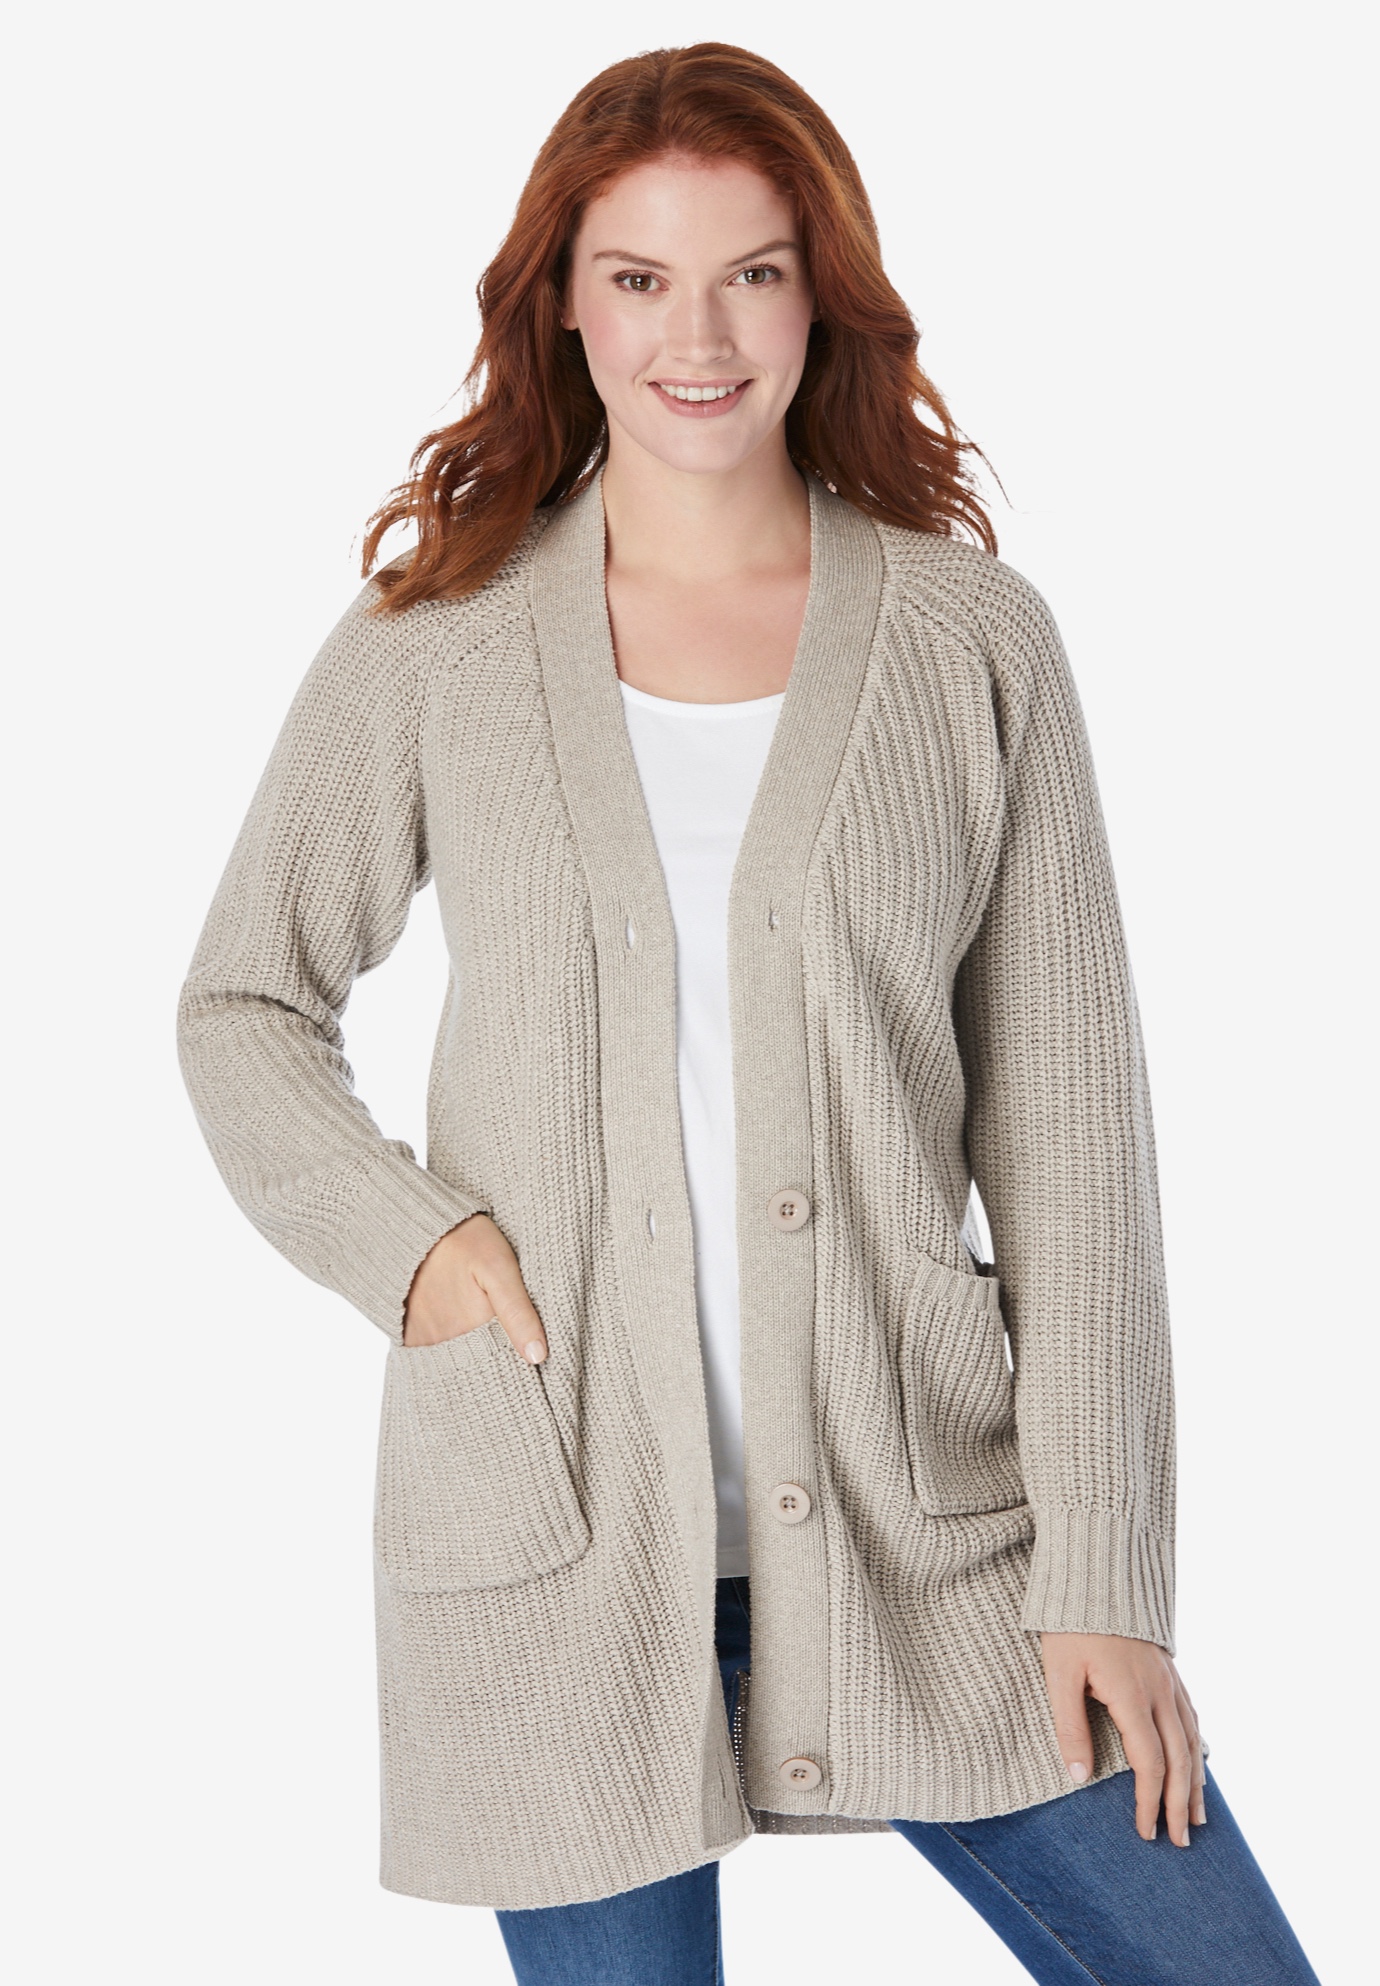 Long-Sleeve Shaker Cardigan Sweater | Fullbeauty Outlet